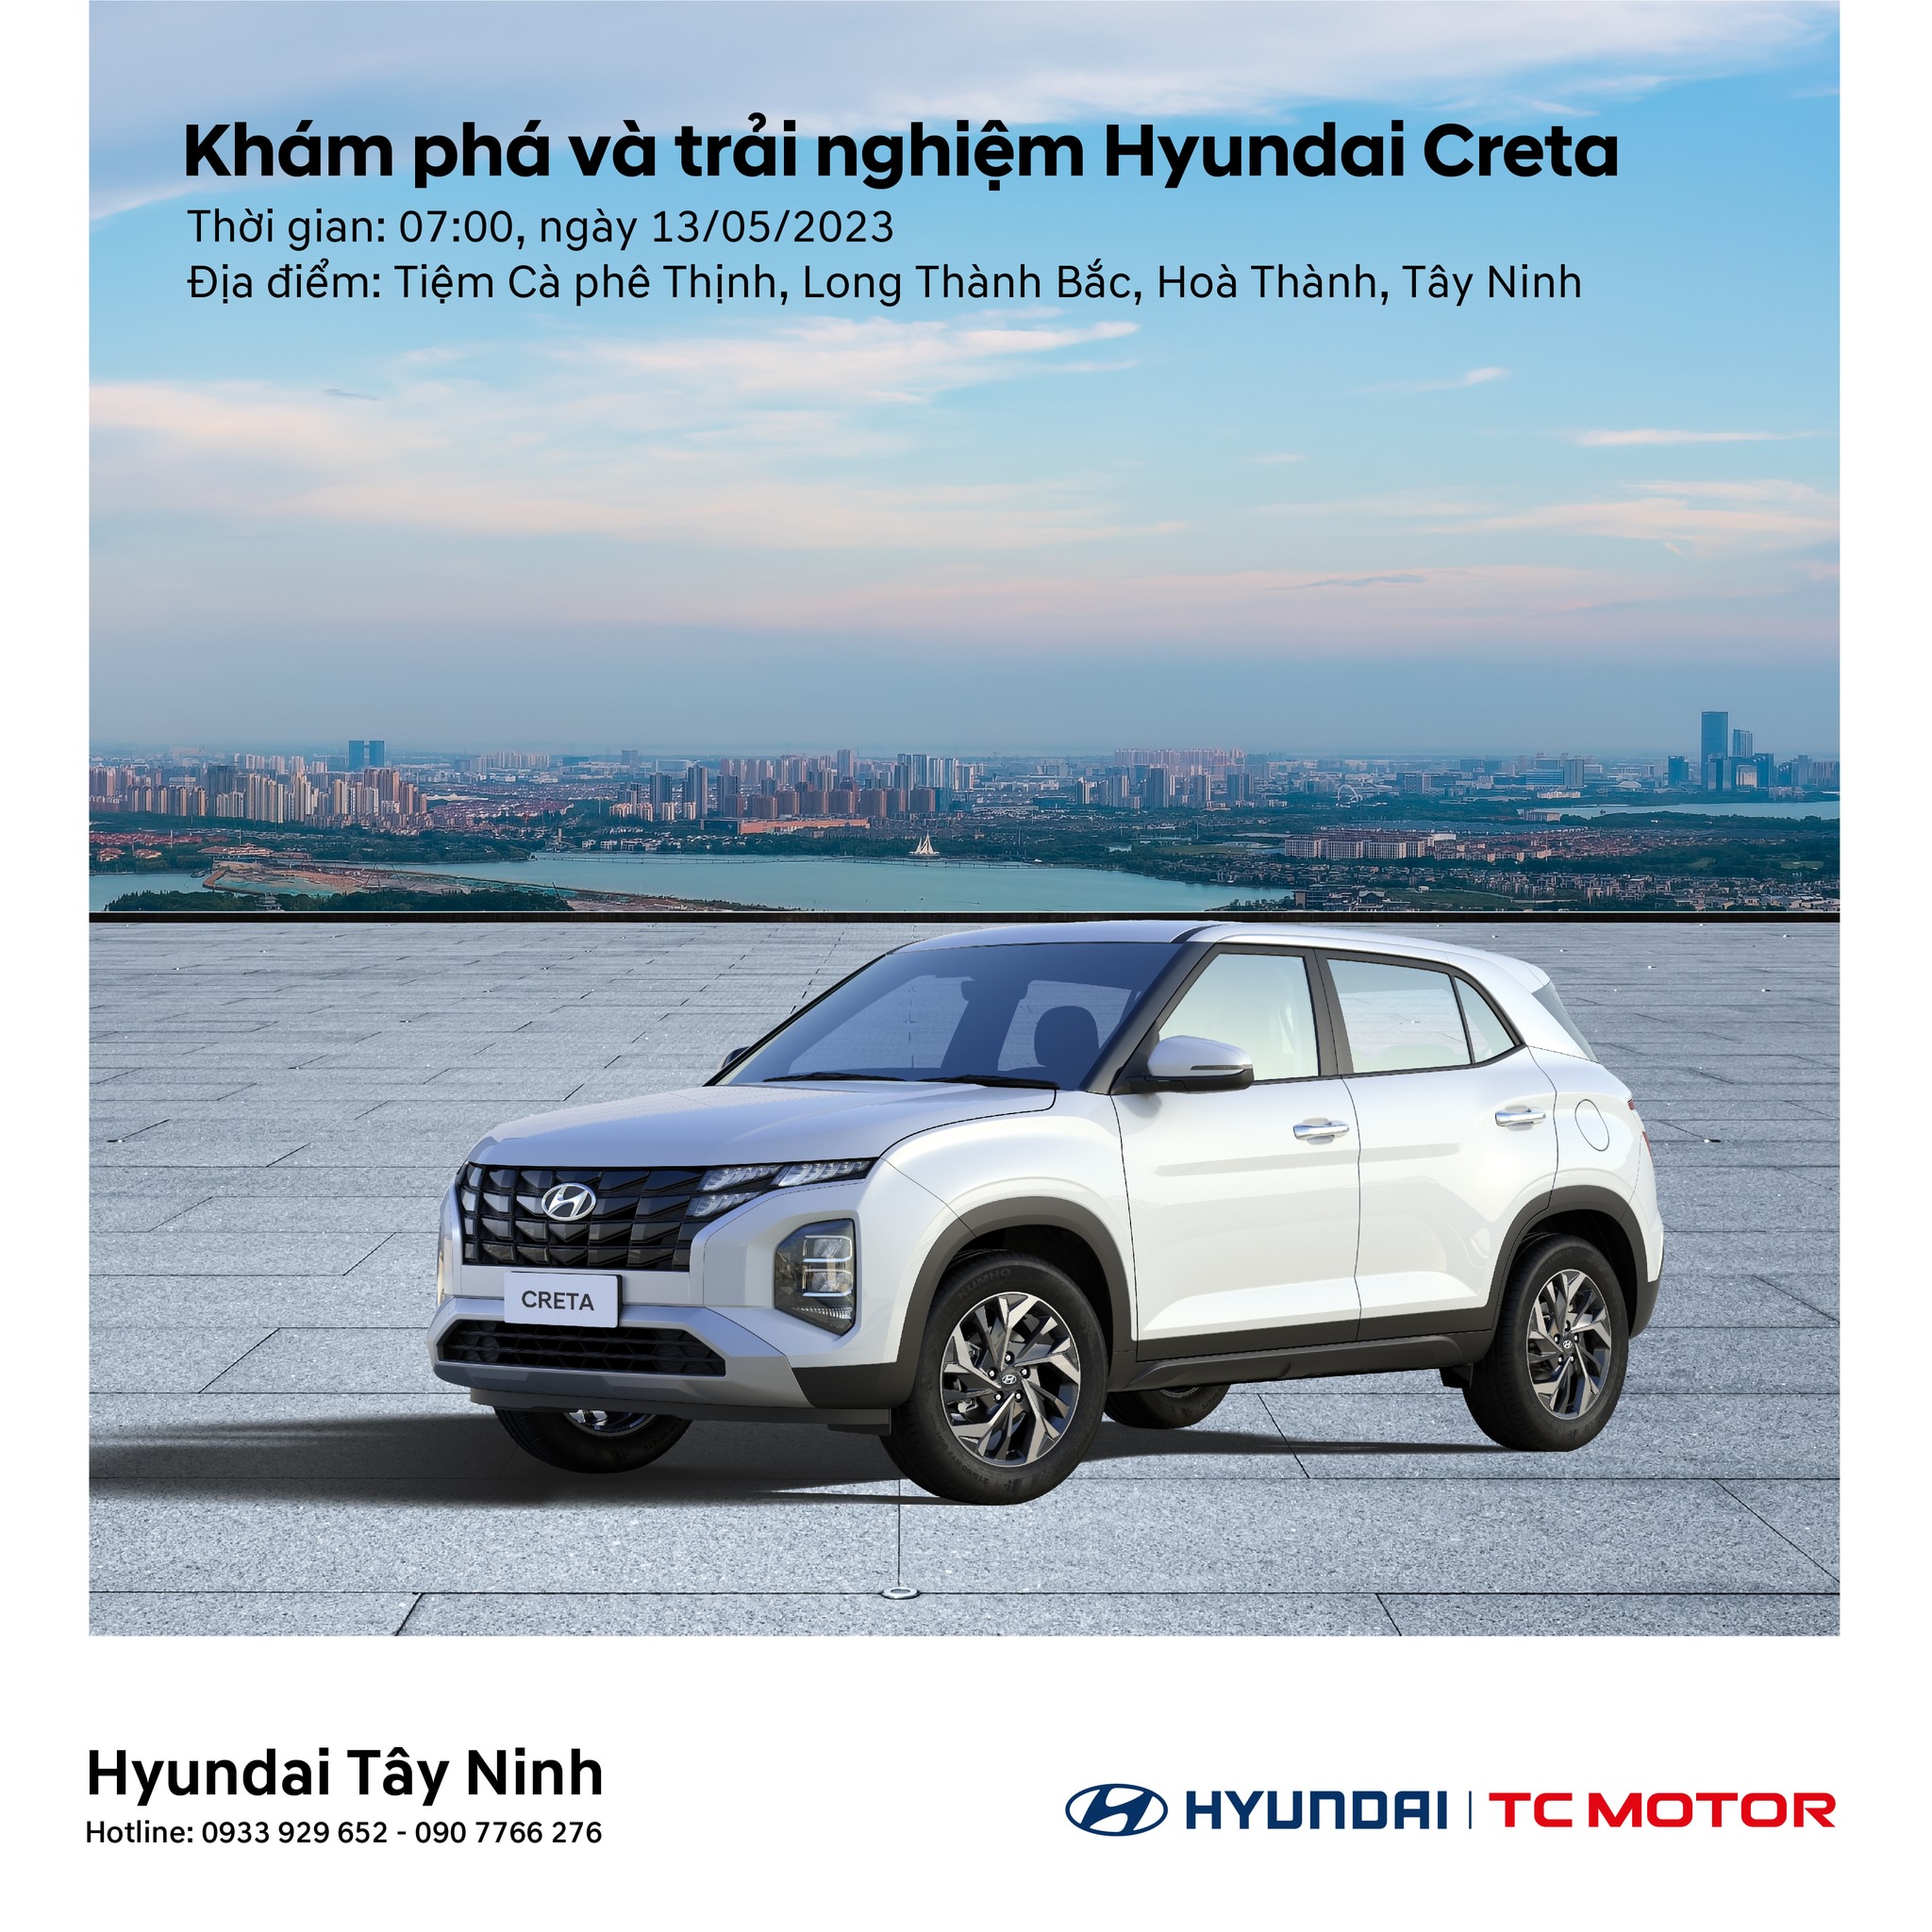 Chương trình Khám phá và trải nghiệm Hyundai Creta